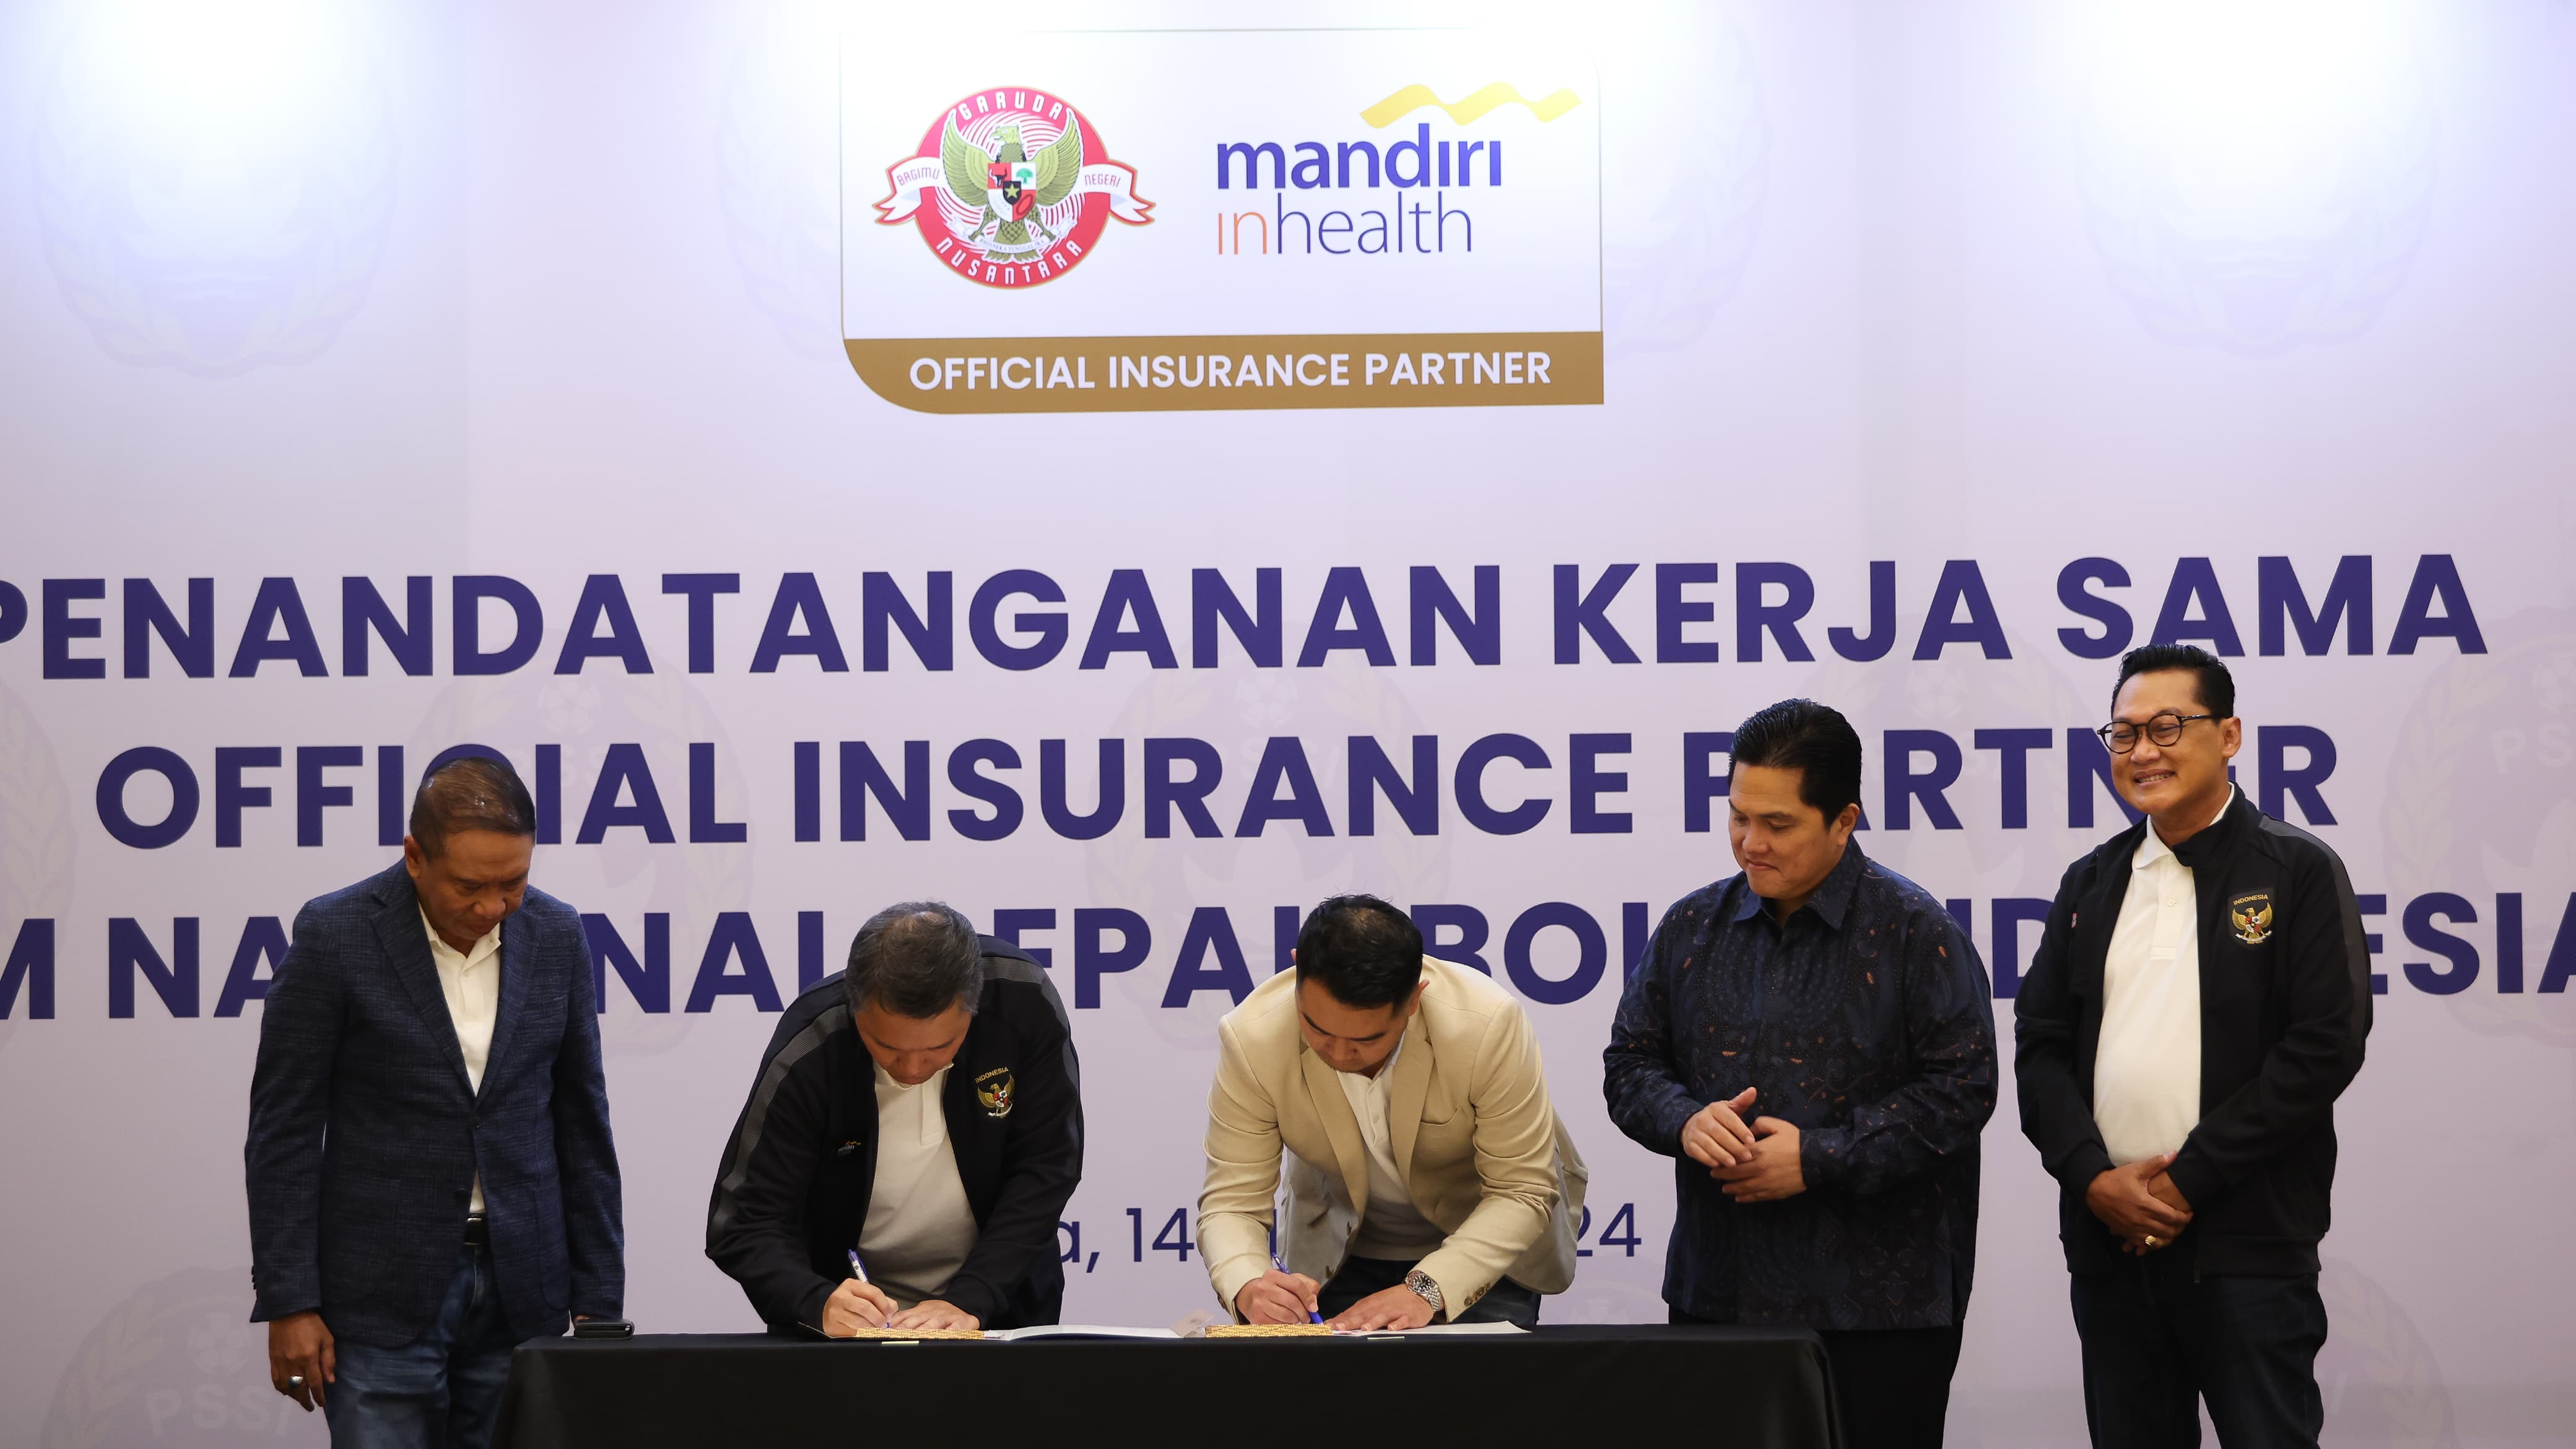 PSSI dan Mantri InHealth menjalin kemitraan asuransi resmi